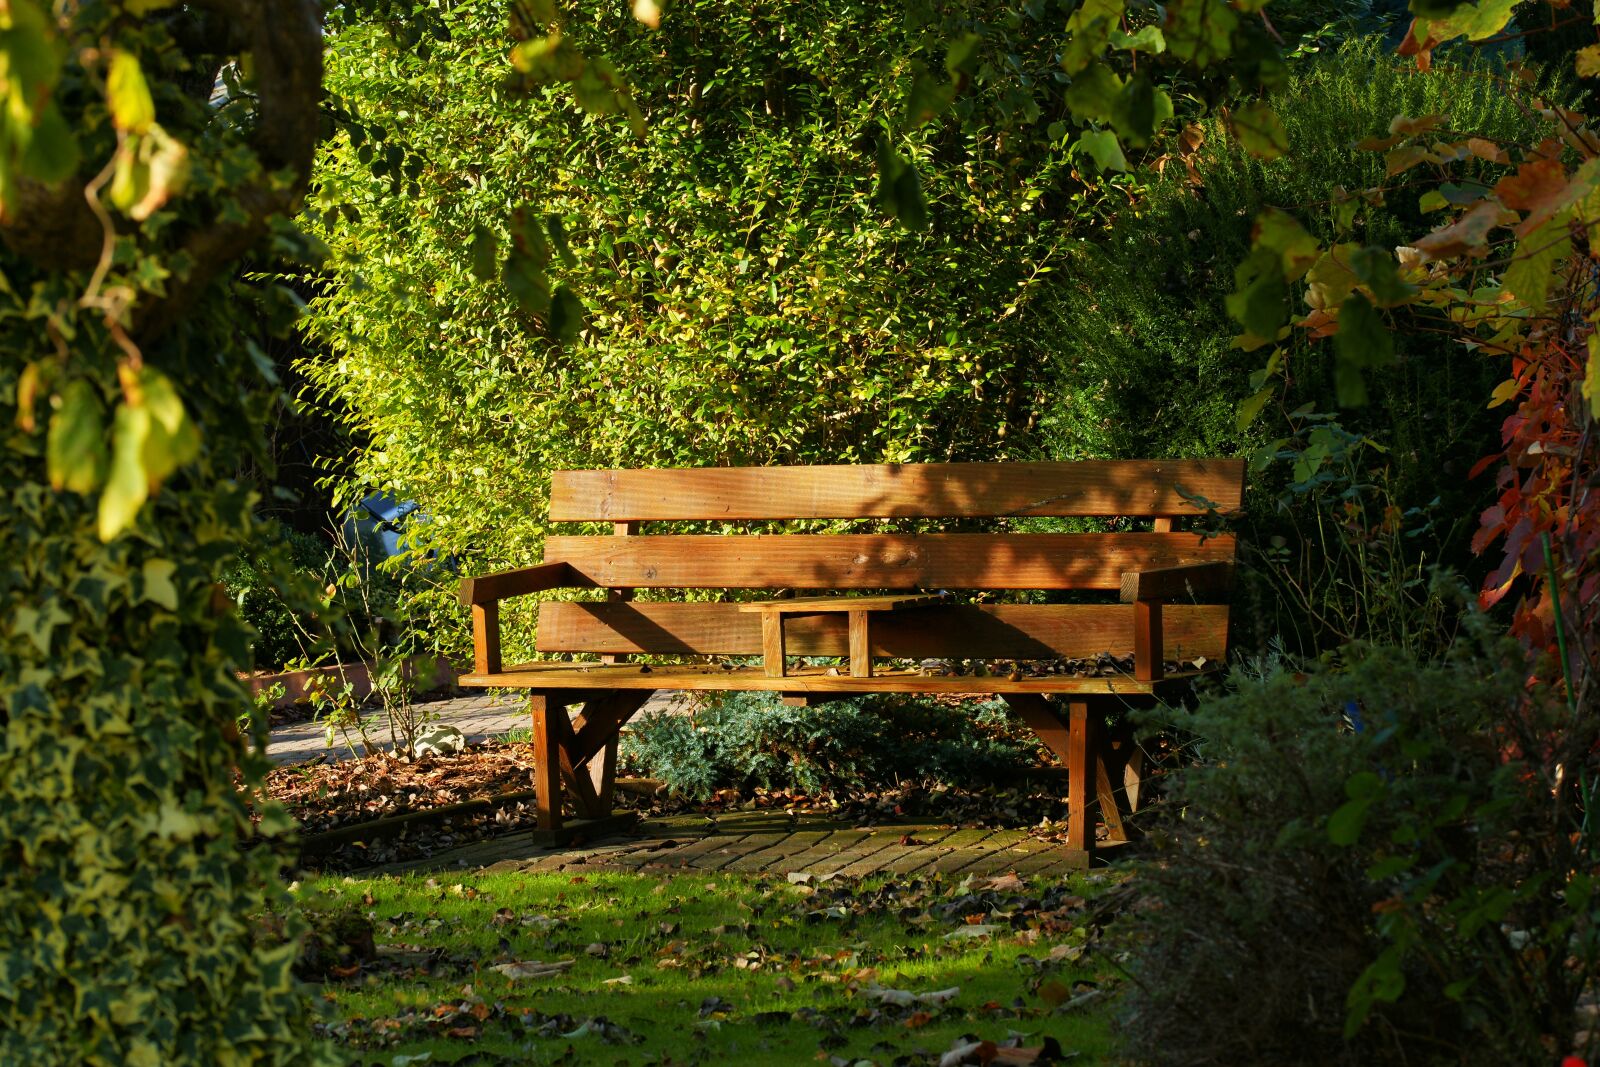 Sony Alpha DSLR-A900 sample photo. Garden bench, autumn, wooden photography